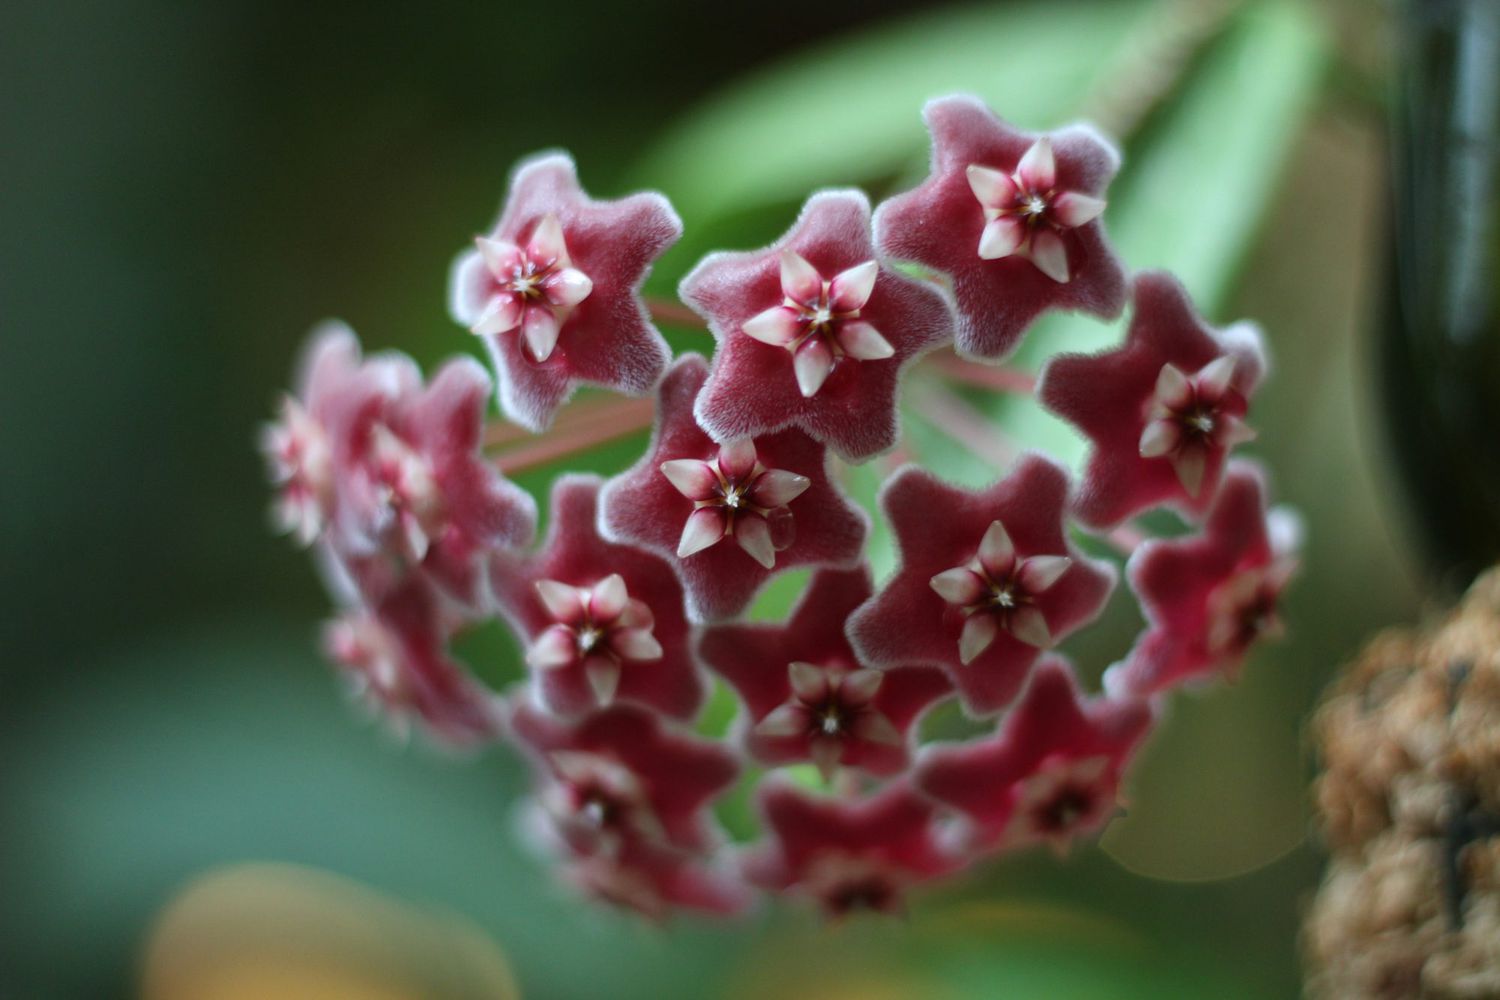 Hoya or wax plant